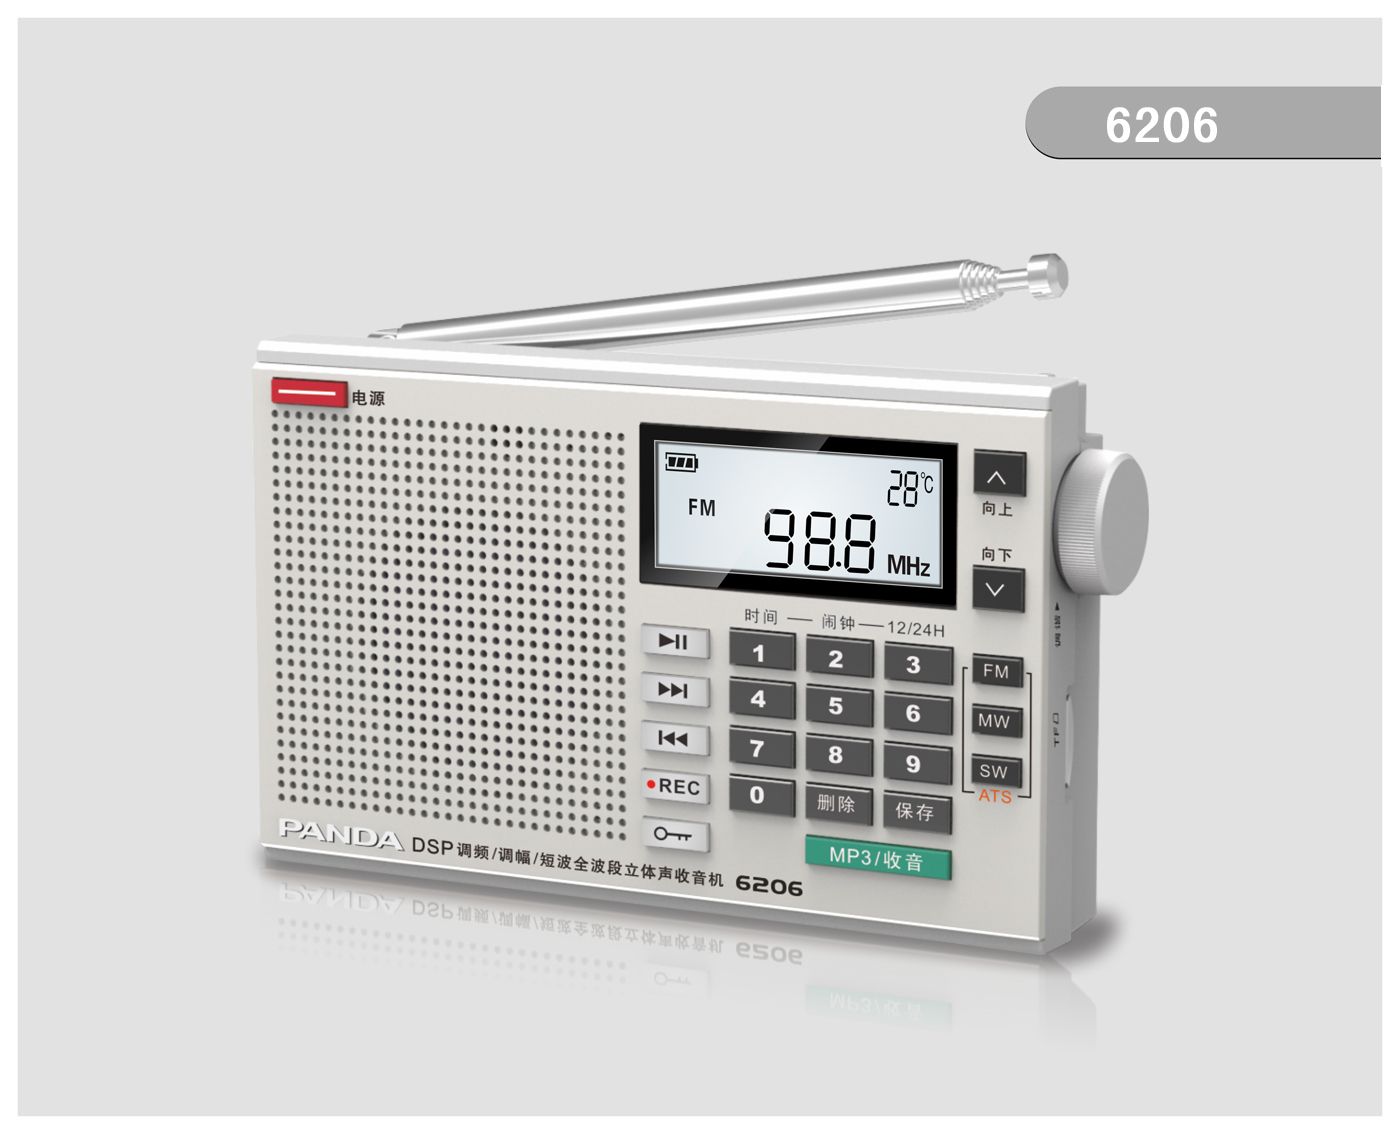 6206 DSP全波段数码收音机